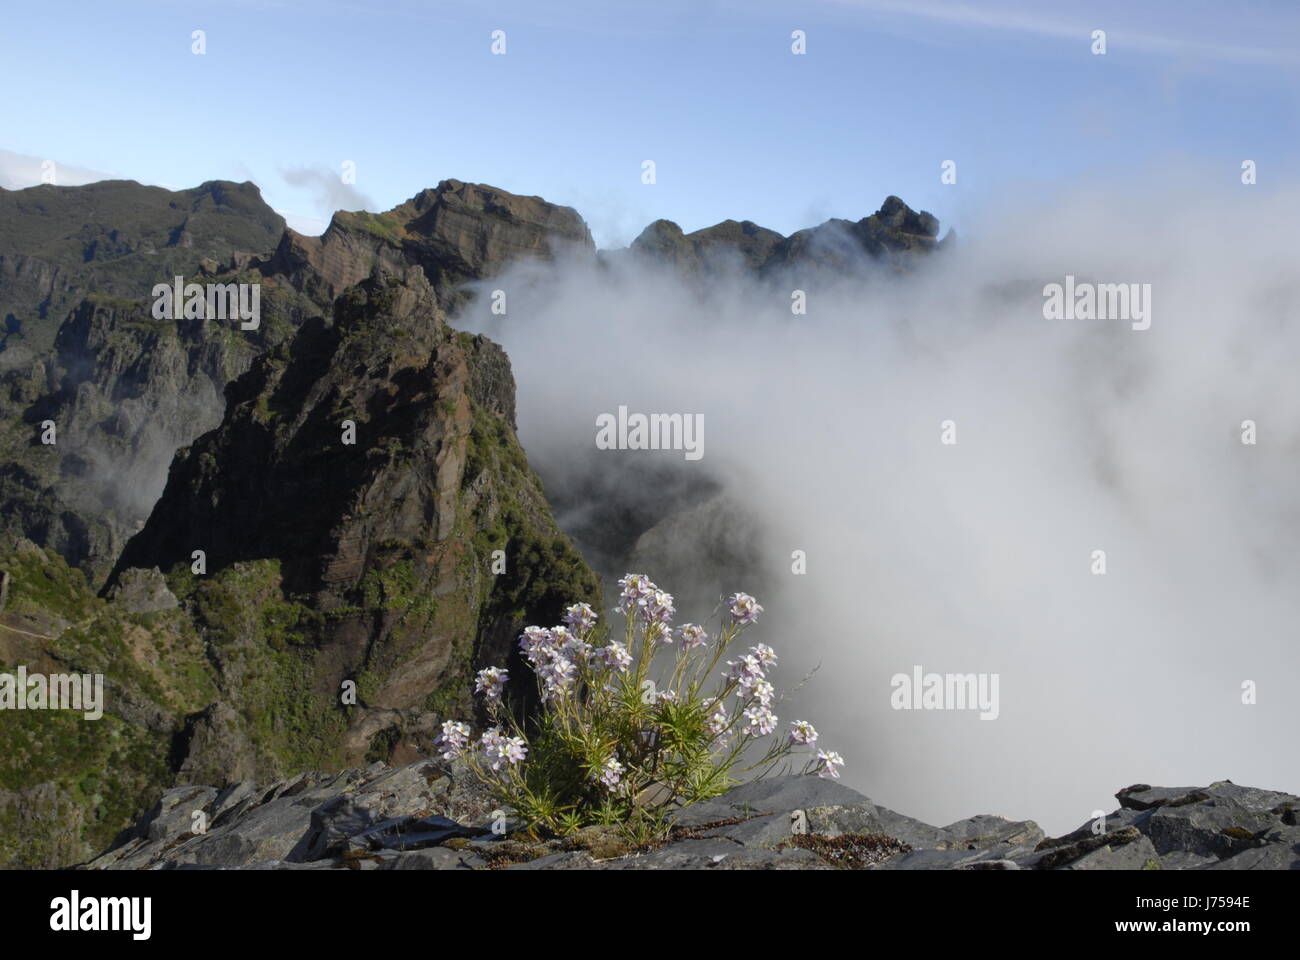 Plante fleur fleurs nature paysage paysage de montagne madère brouillard nuages Banque D'Images